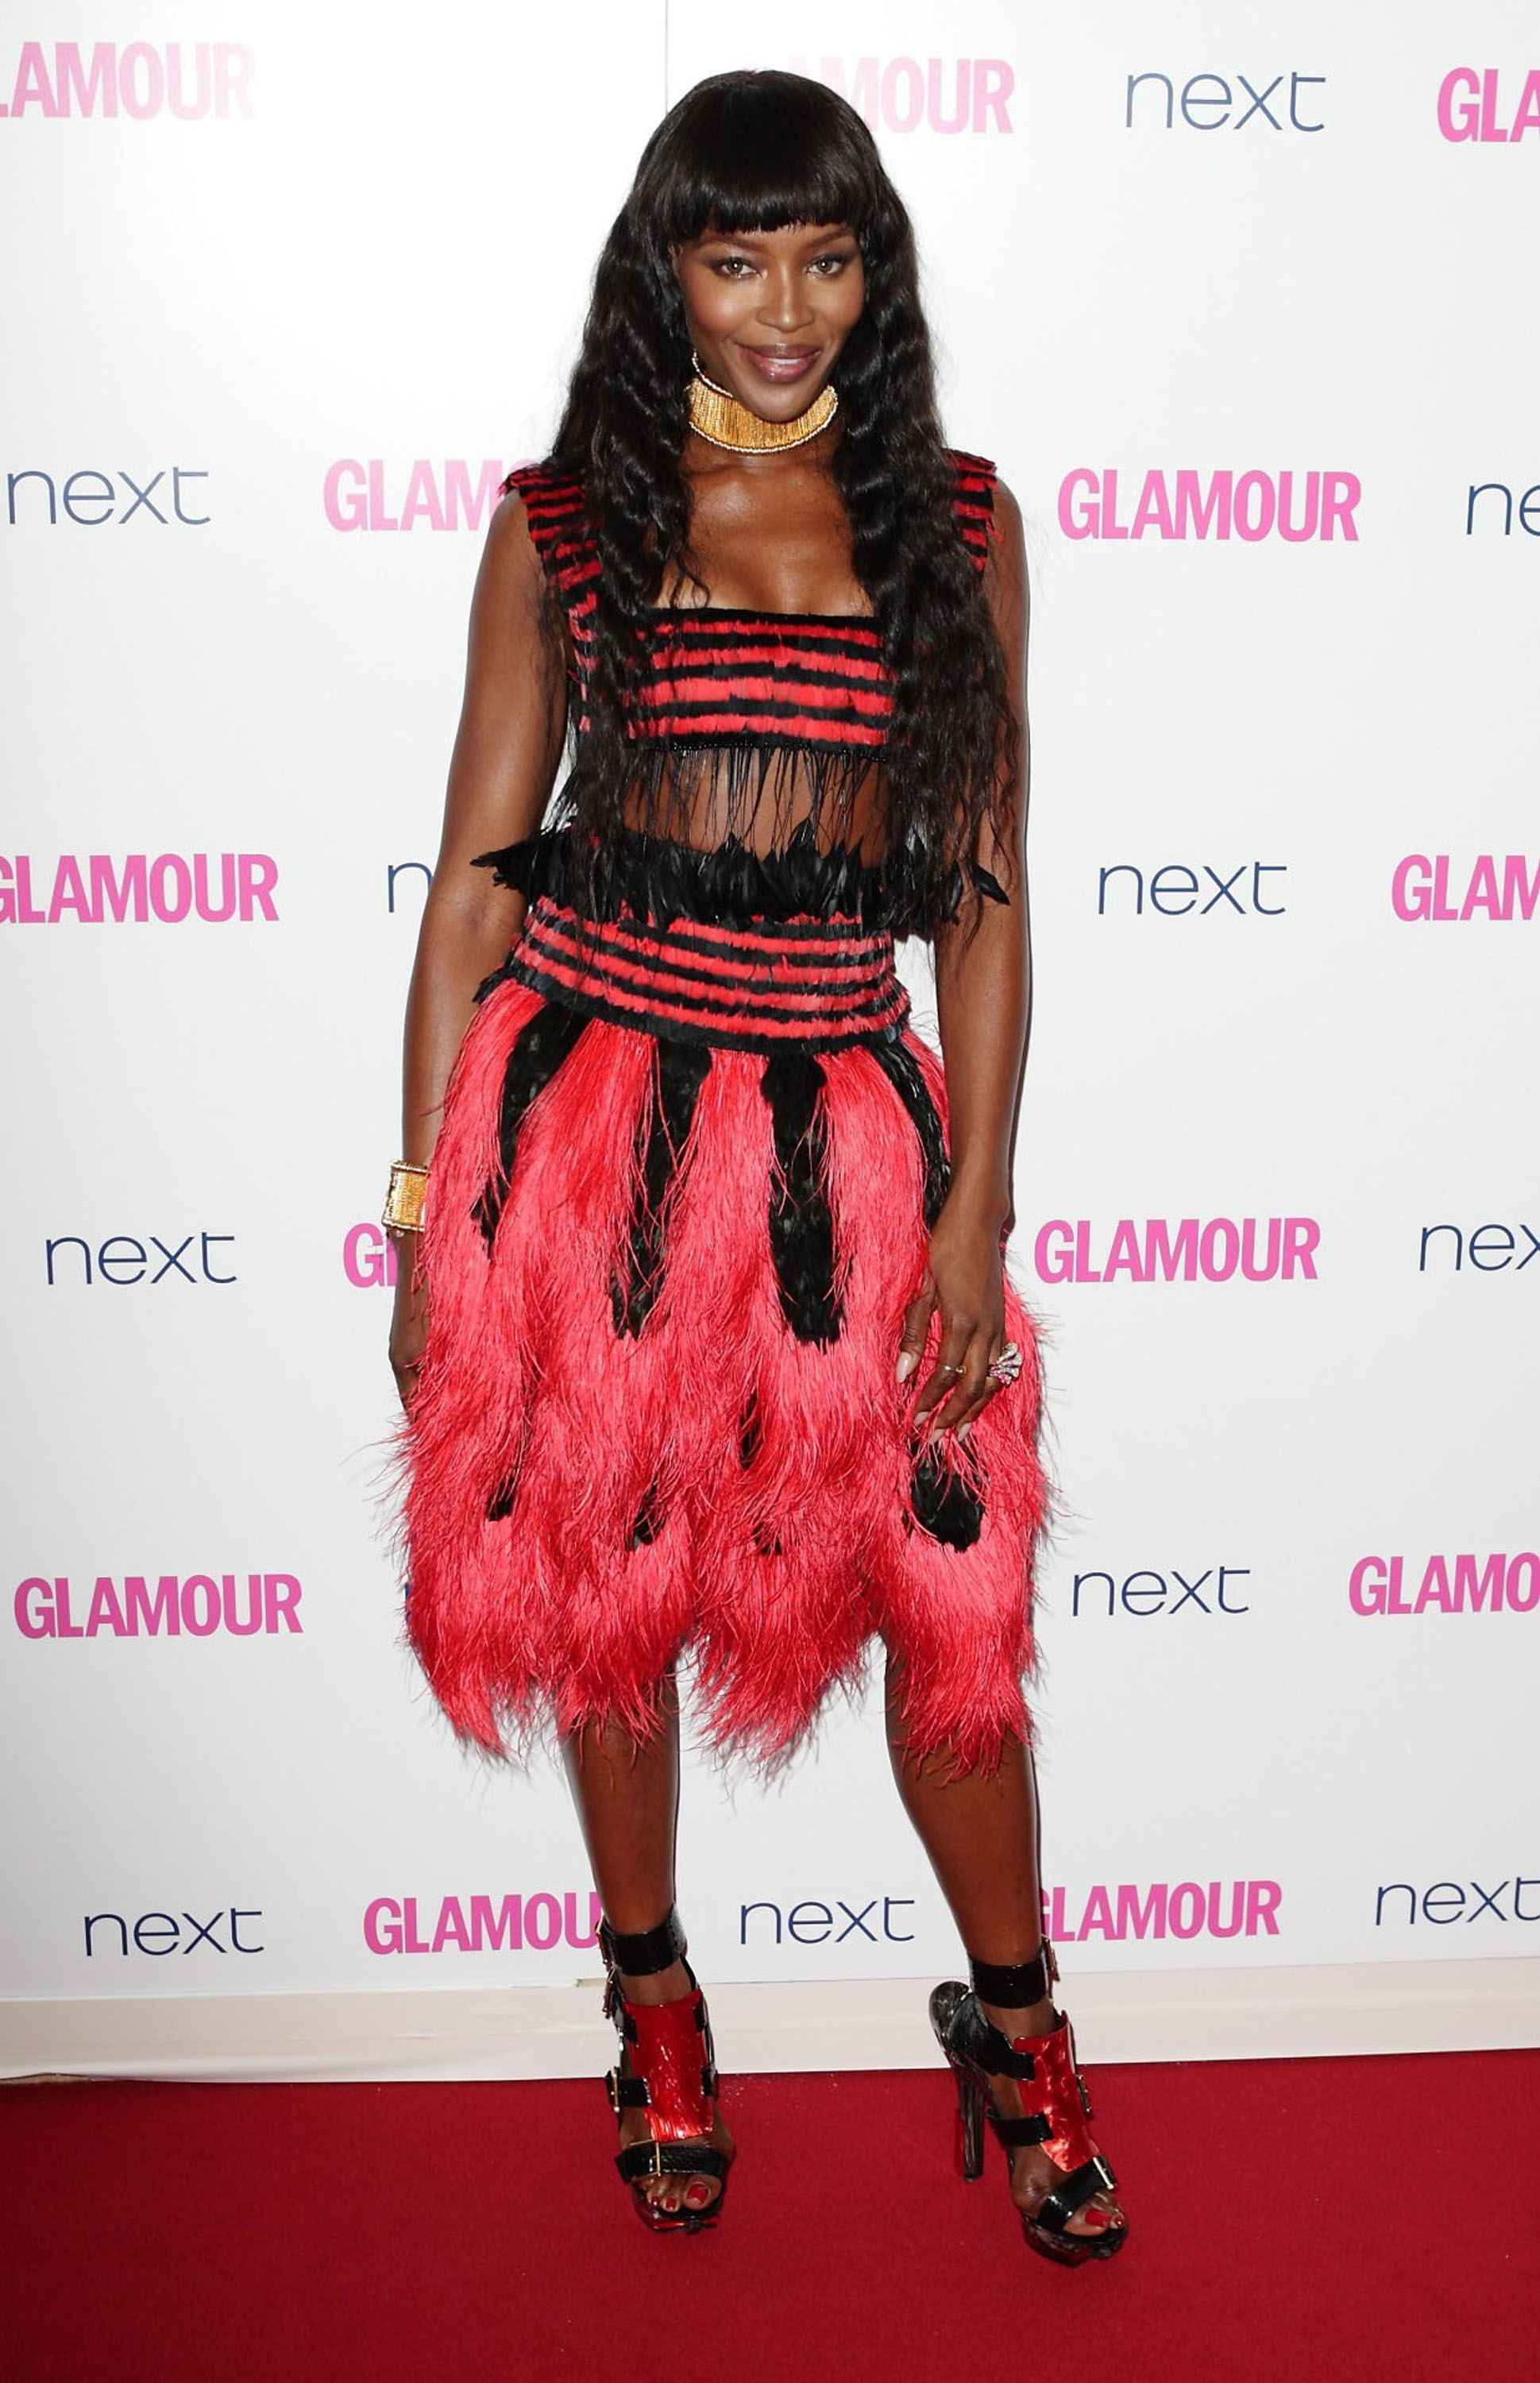 The 2014 Glamour Magazine Awards